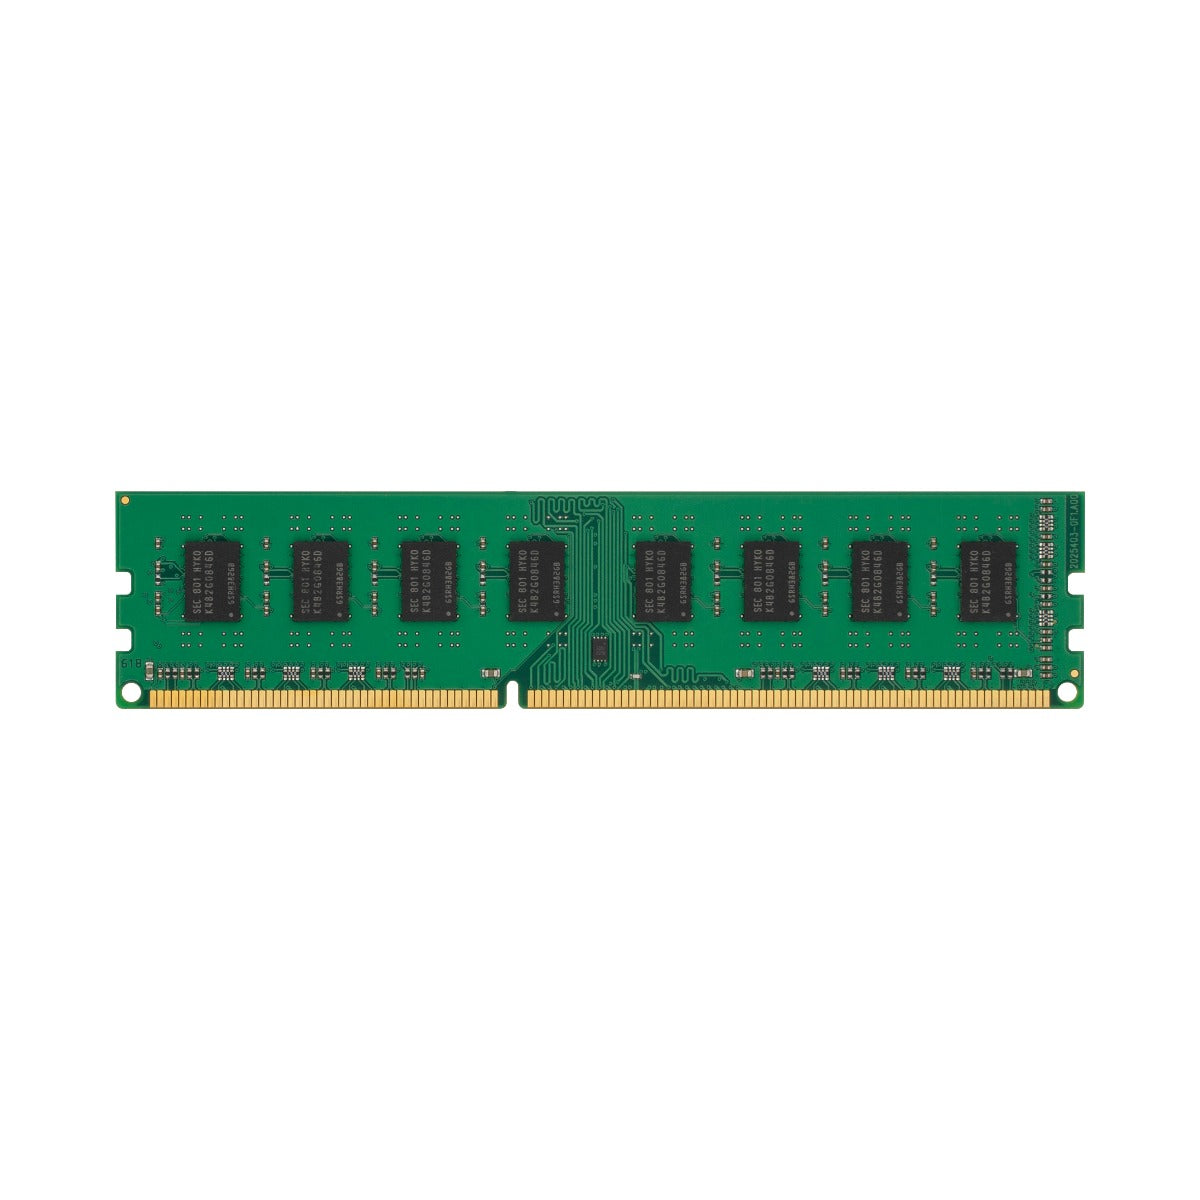 Akademi Fortløbende angivet DDR3 - 1333MHz - CL9 - DIMM - Desktop – VisionTek.com